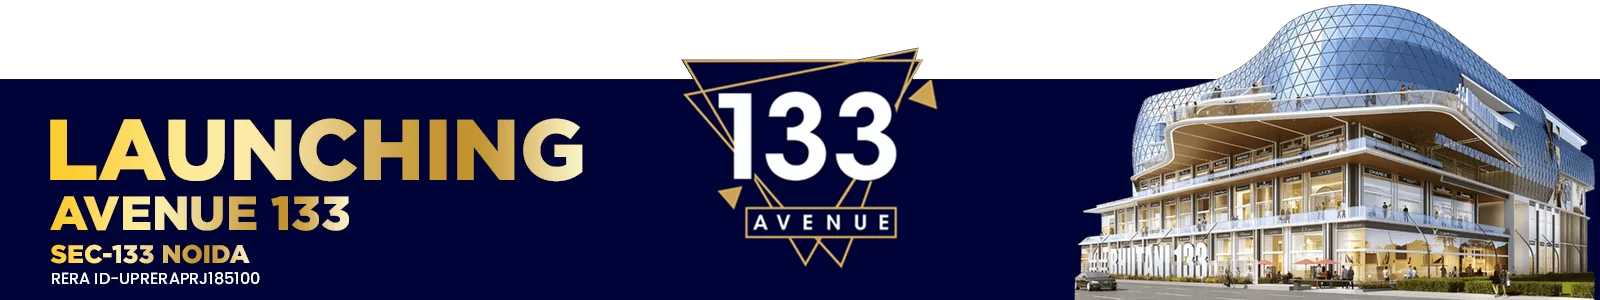 133AVENUE-min